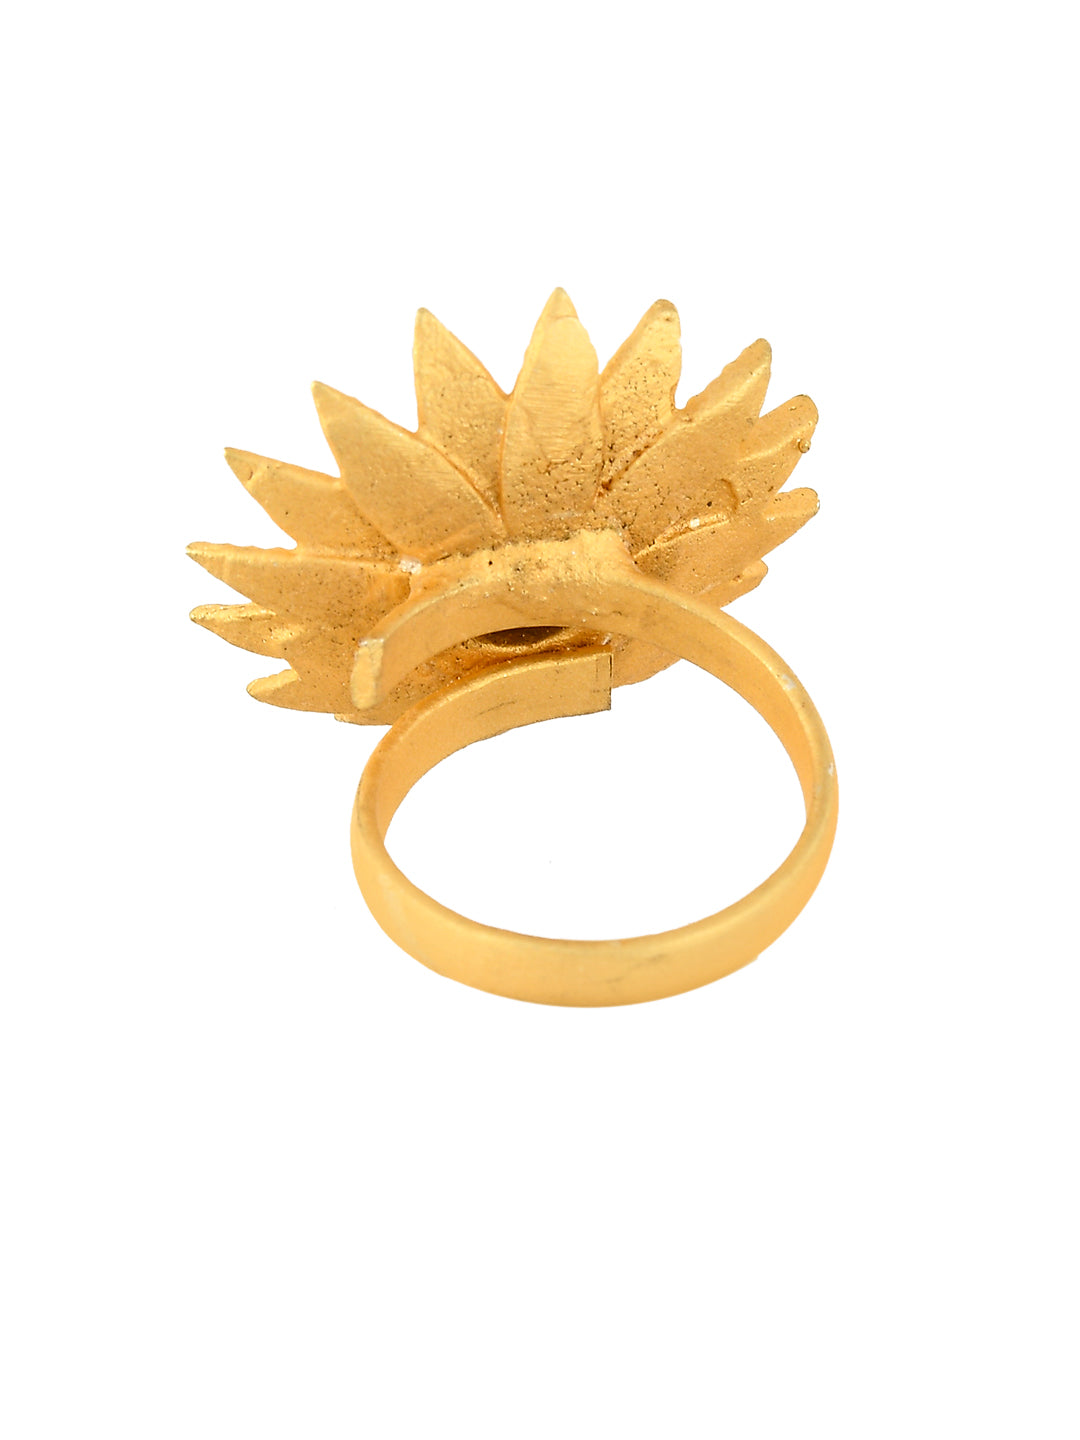 Designer Lotus Flower Ring For Girl